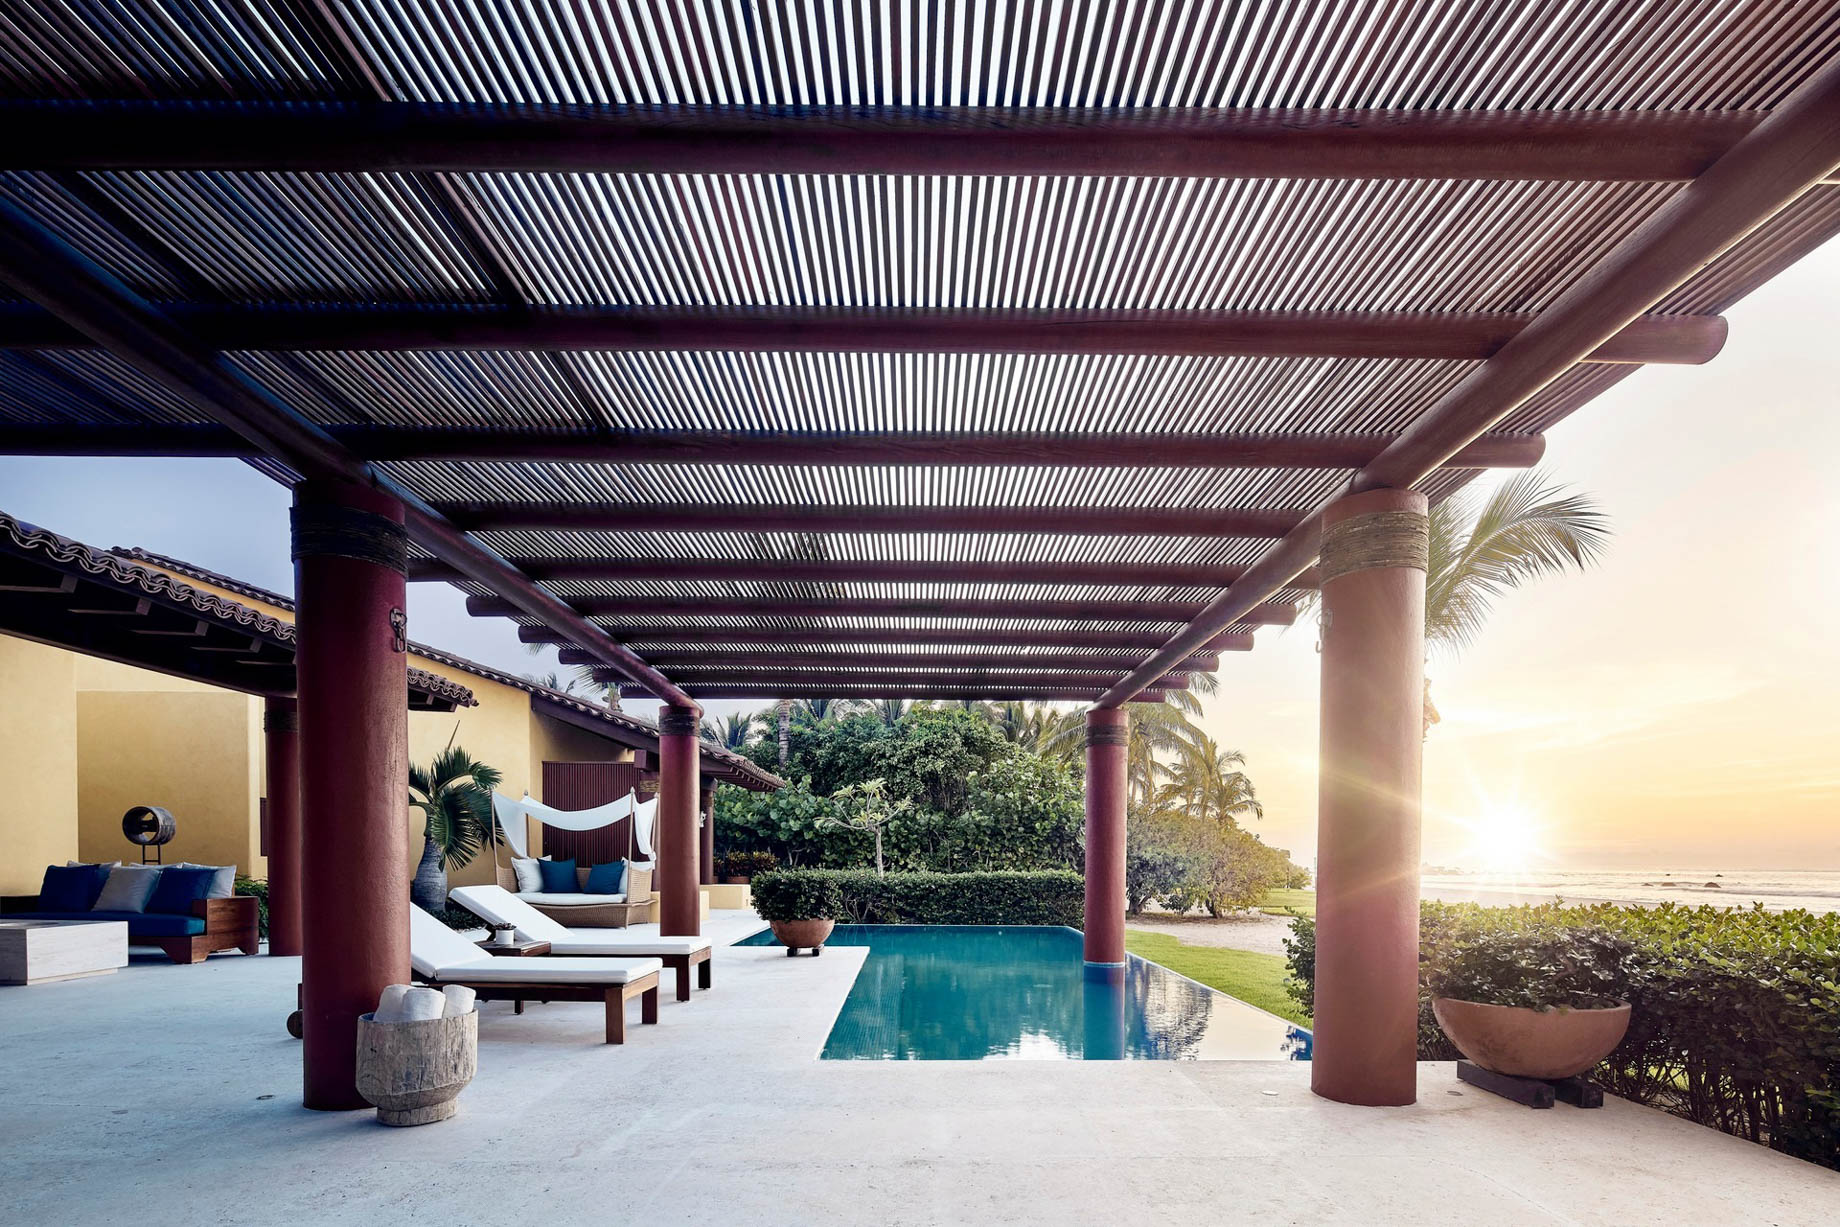 Four Seasons Resort Punta Mita – Nayarit, Mexico – Resort Villa Pool Deck Sunset